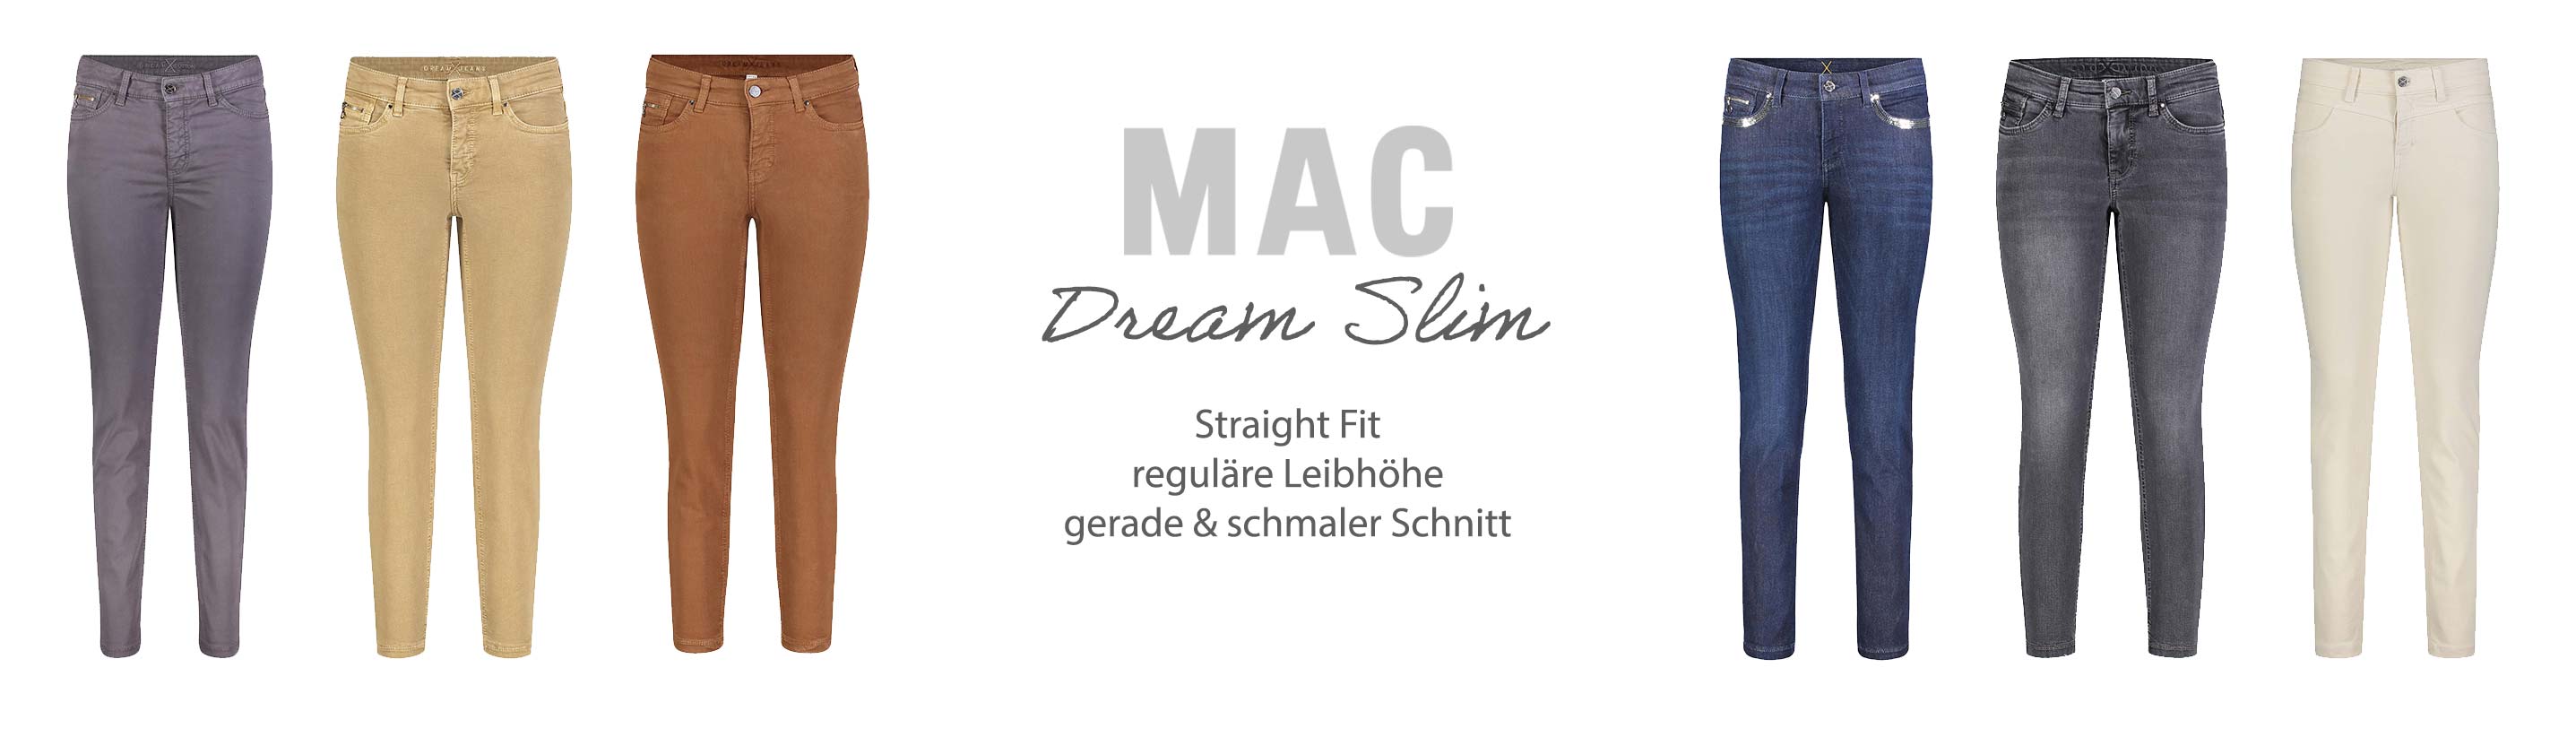 MAC Jeans Dream Slim